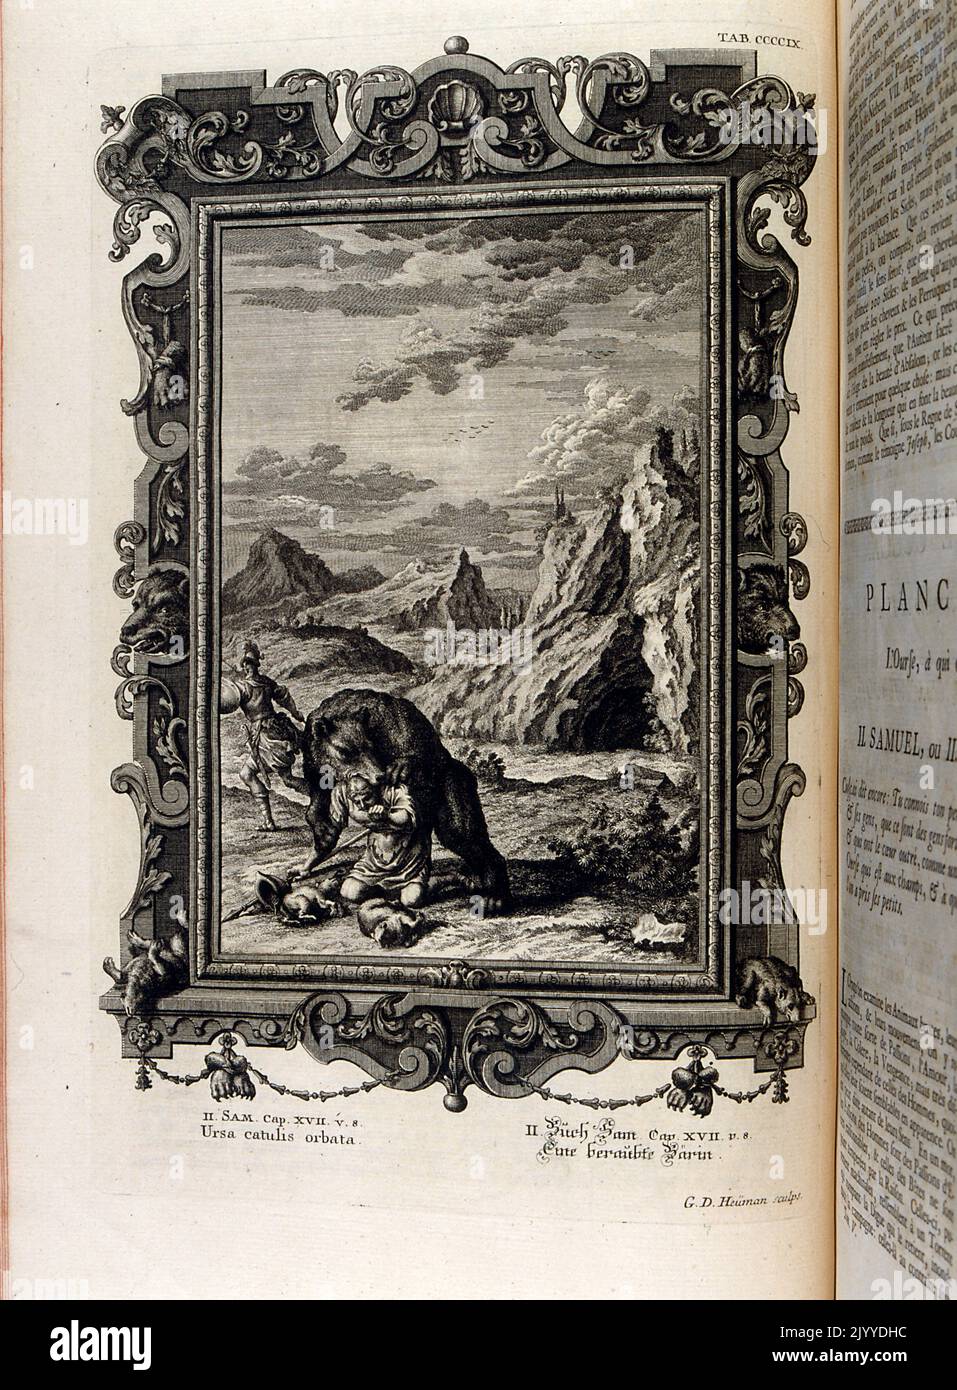 Gravur mit einem Bären, der einen Soldaten vor einer felsigen Berglandschaft verschlingt. Die Illustration ist in einem kunstvollen Rahmen gesetzt. Stockfoto